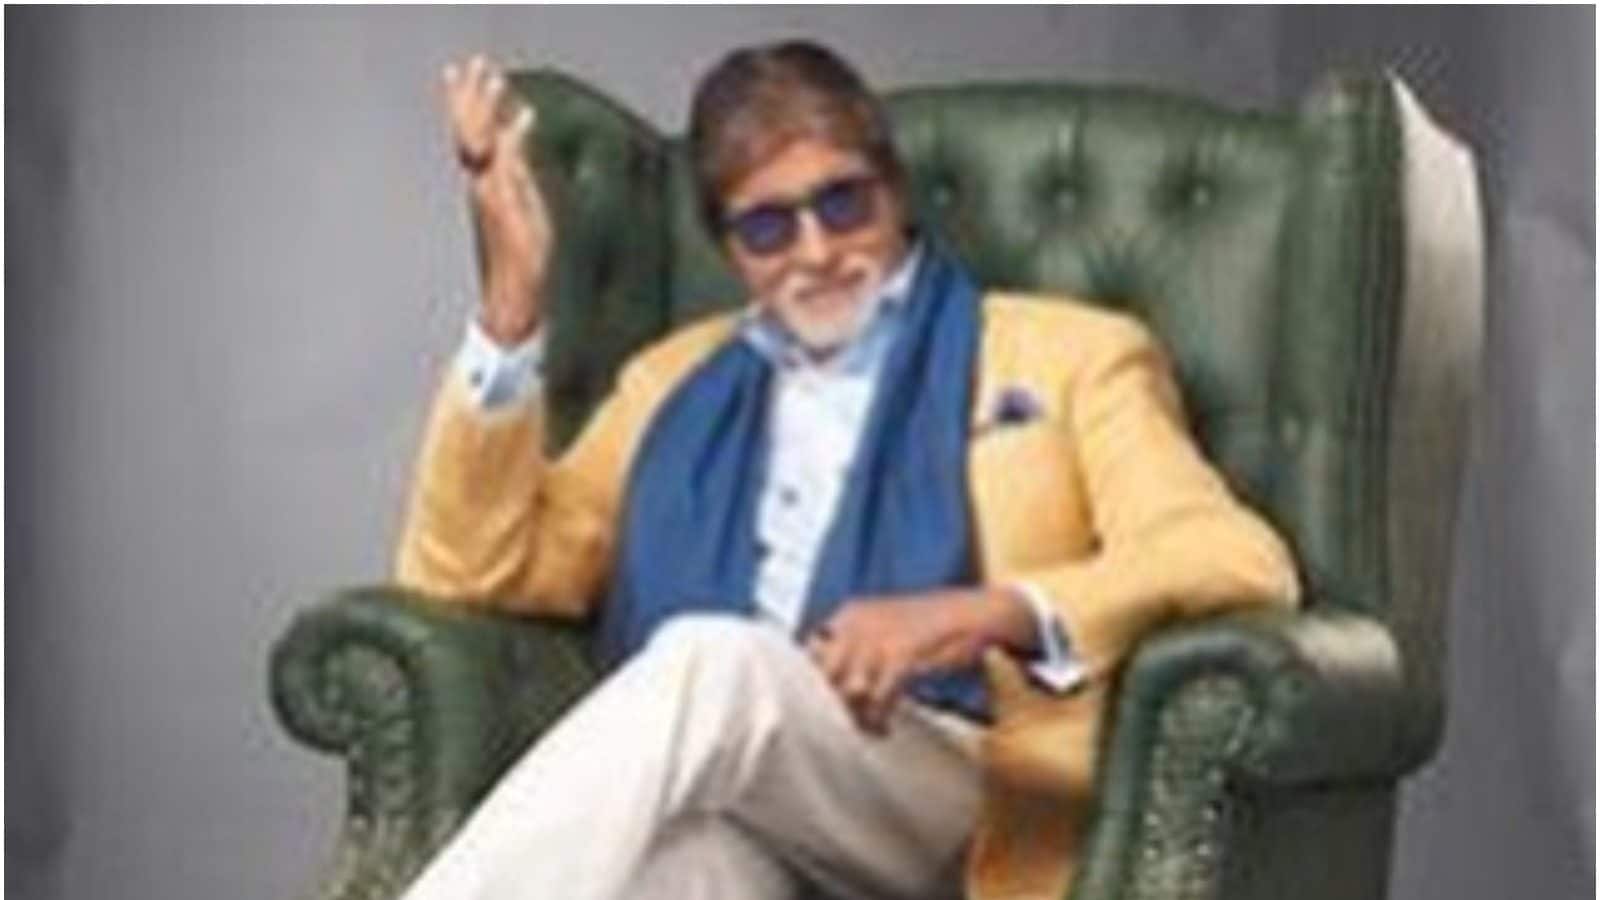 Discrimination against women disturbs me: Amitabh Bachchan - Daily Times